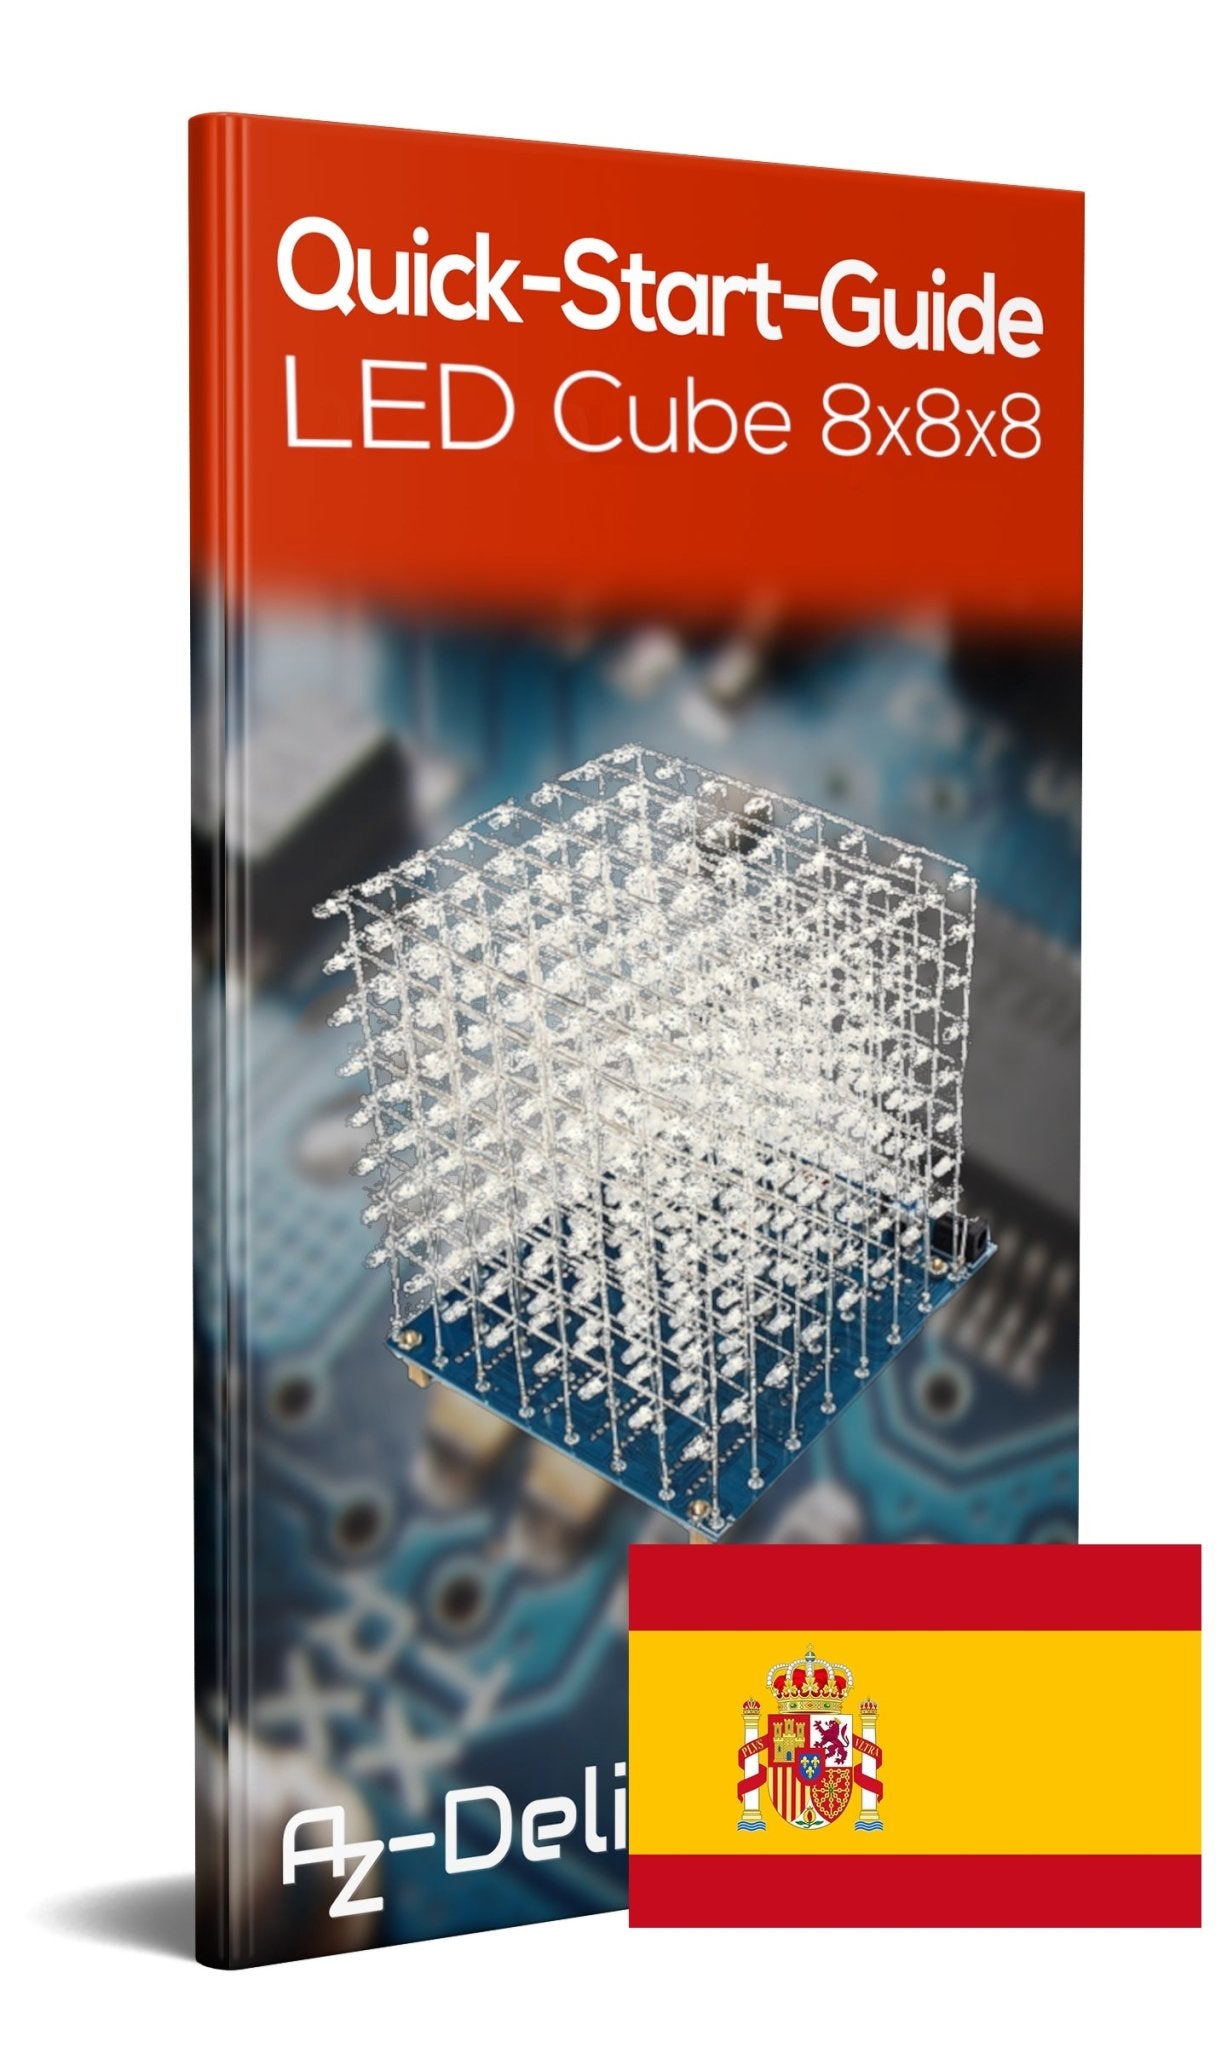 3D LED Cube 8x8x8 matrice de Lumière Cube Kit pour souder